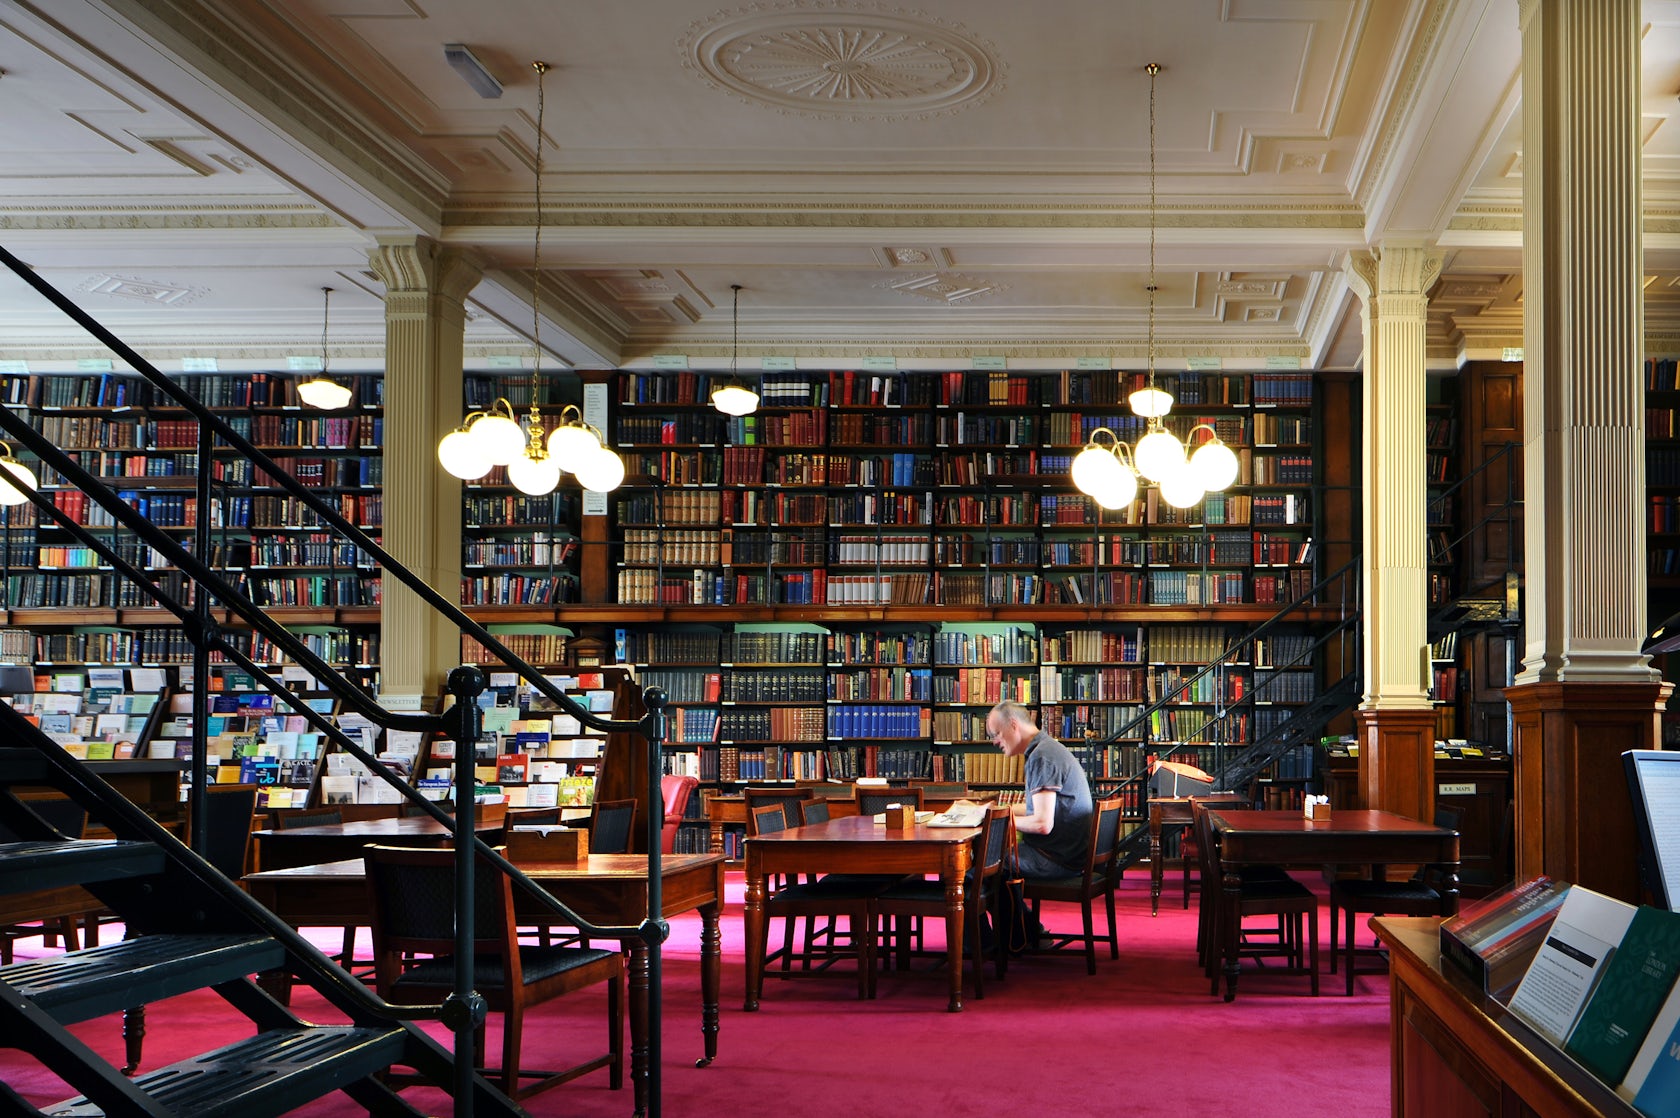 Языковая библиотека. Библиотека британского музея. Читальный зал британского музея. Британская библиотека в Лондоне. Национальная библиотека Лондона.